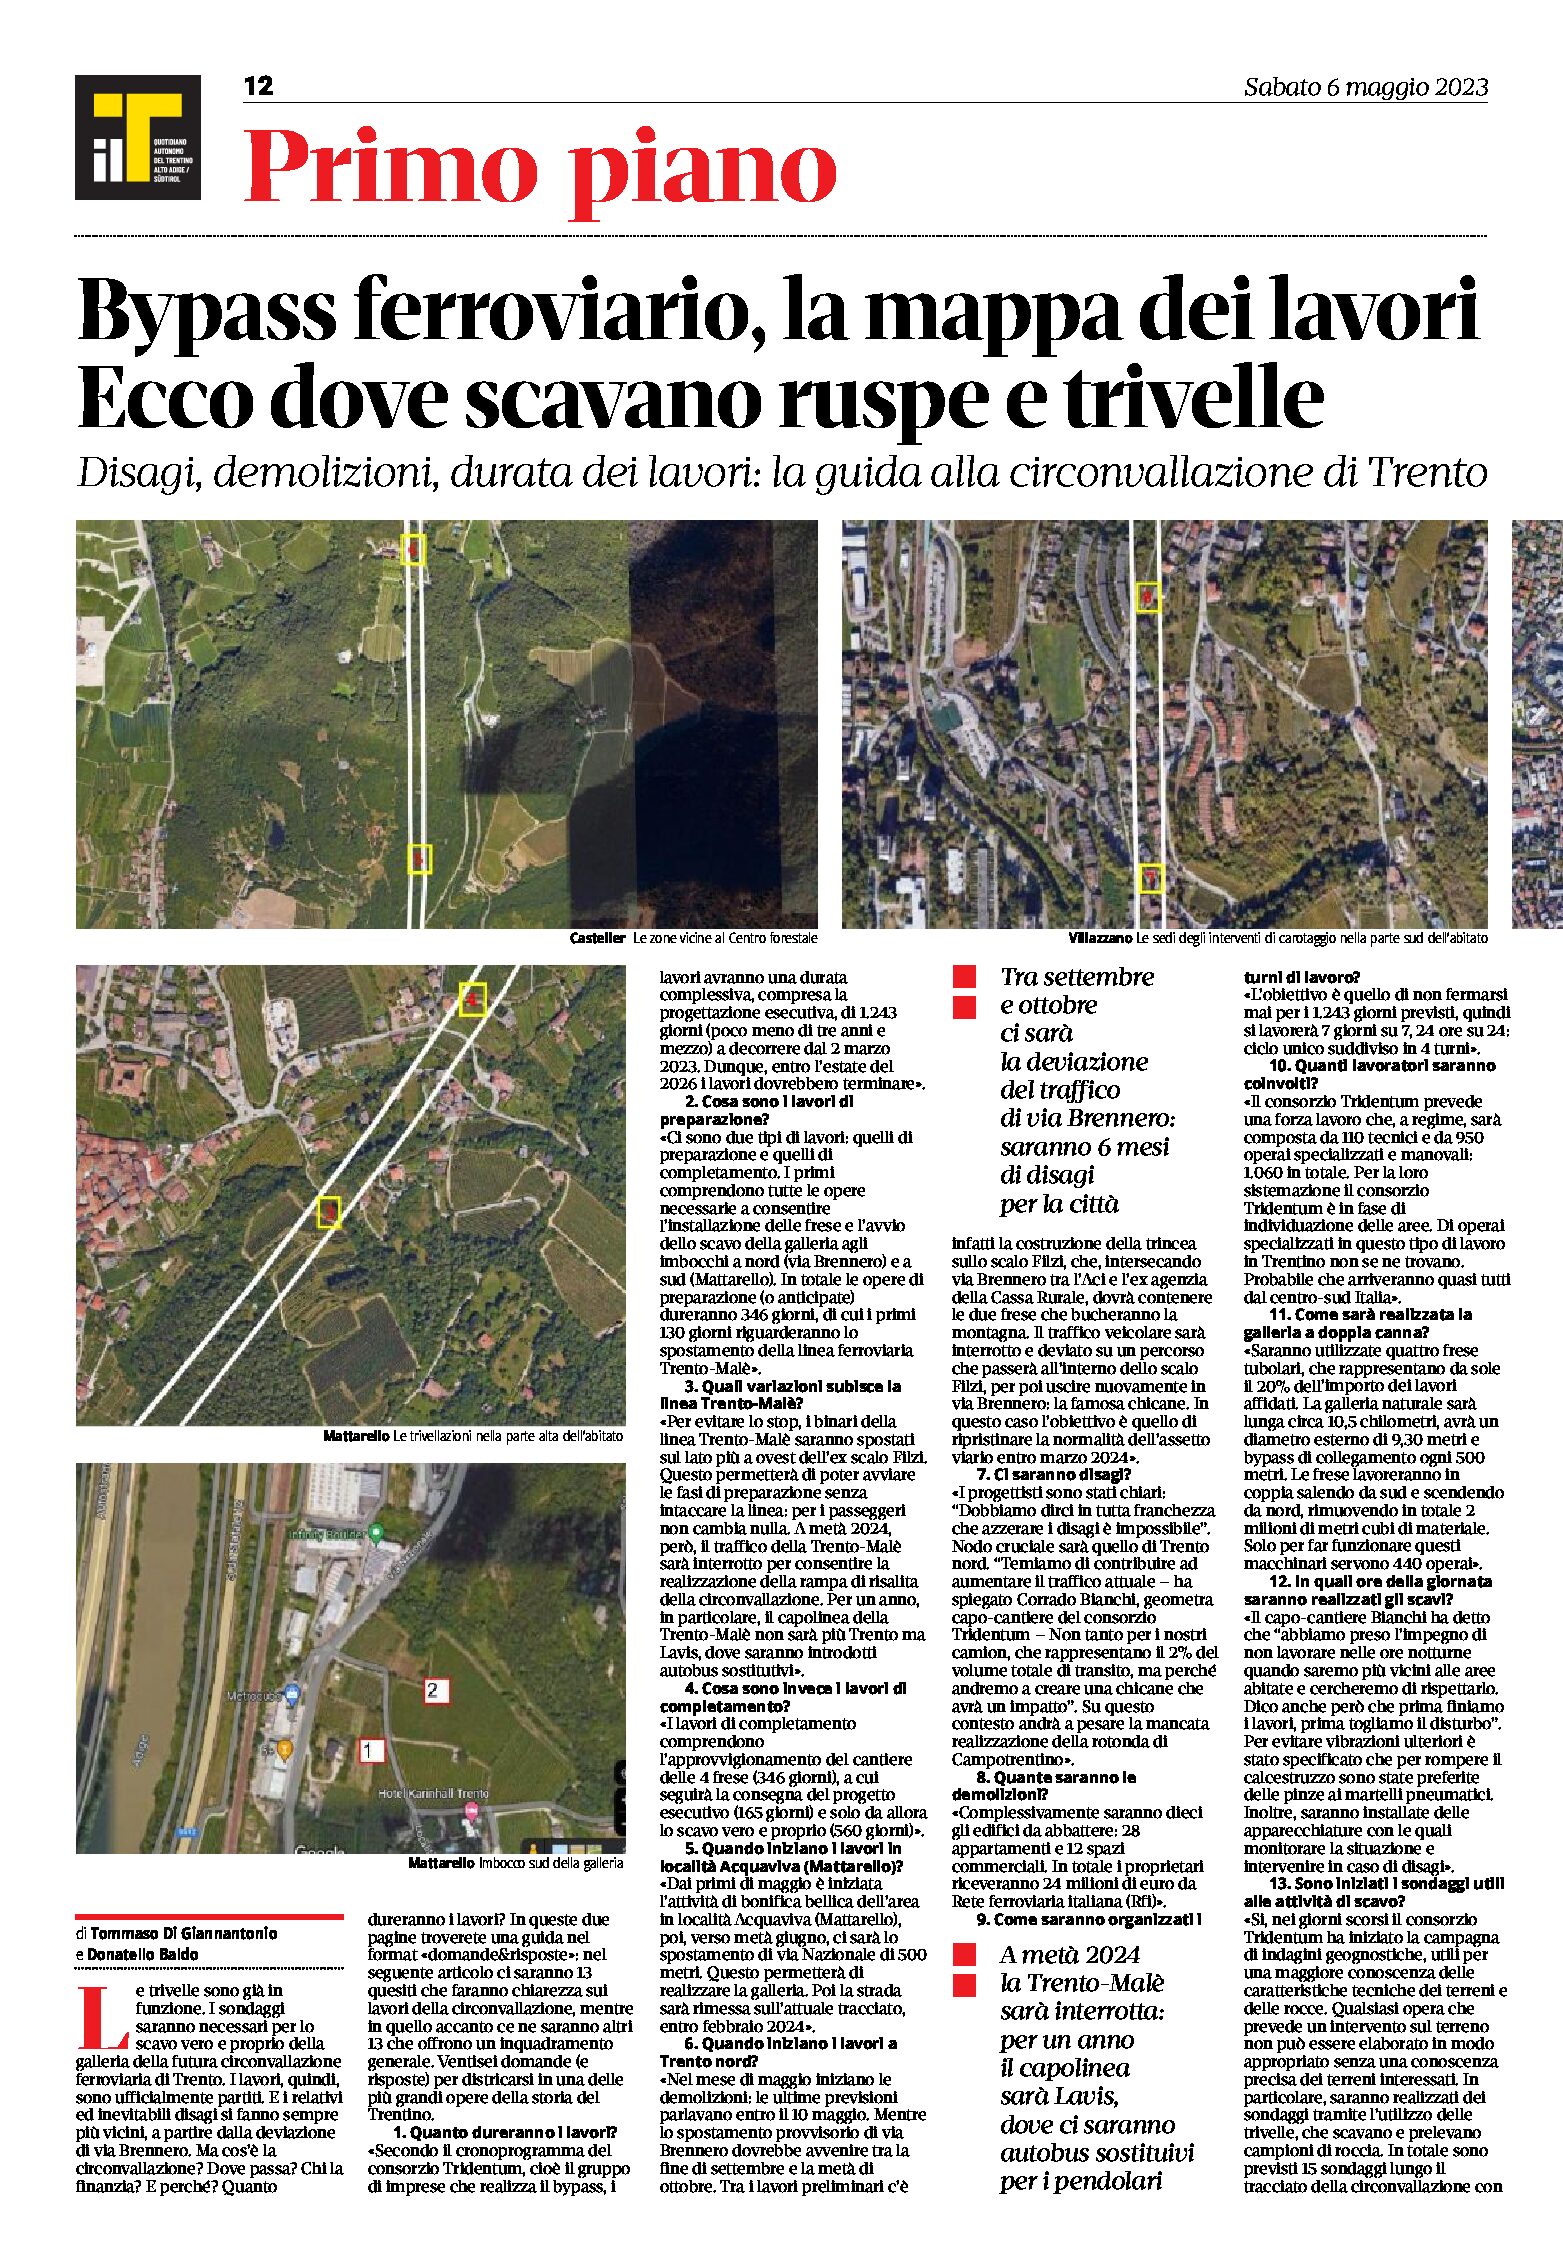 Trento, bypass ferroviario: mappa dei lavori, ecco dove scavano ruspe e trivelle. Radiografia dell’opera